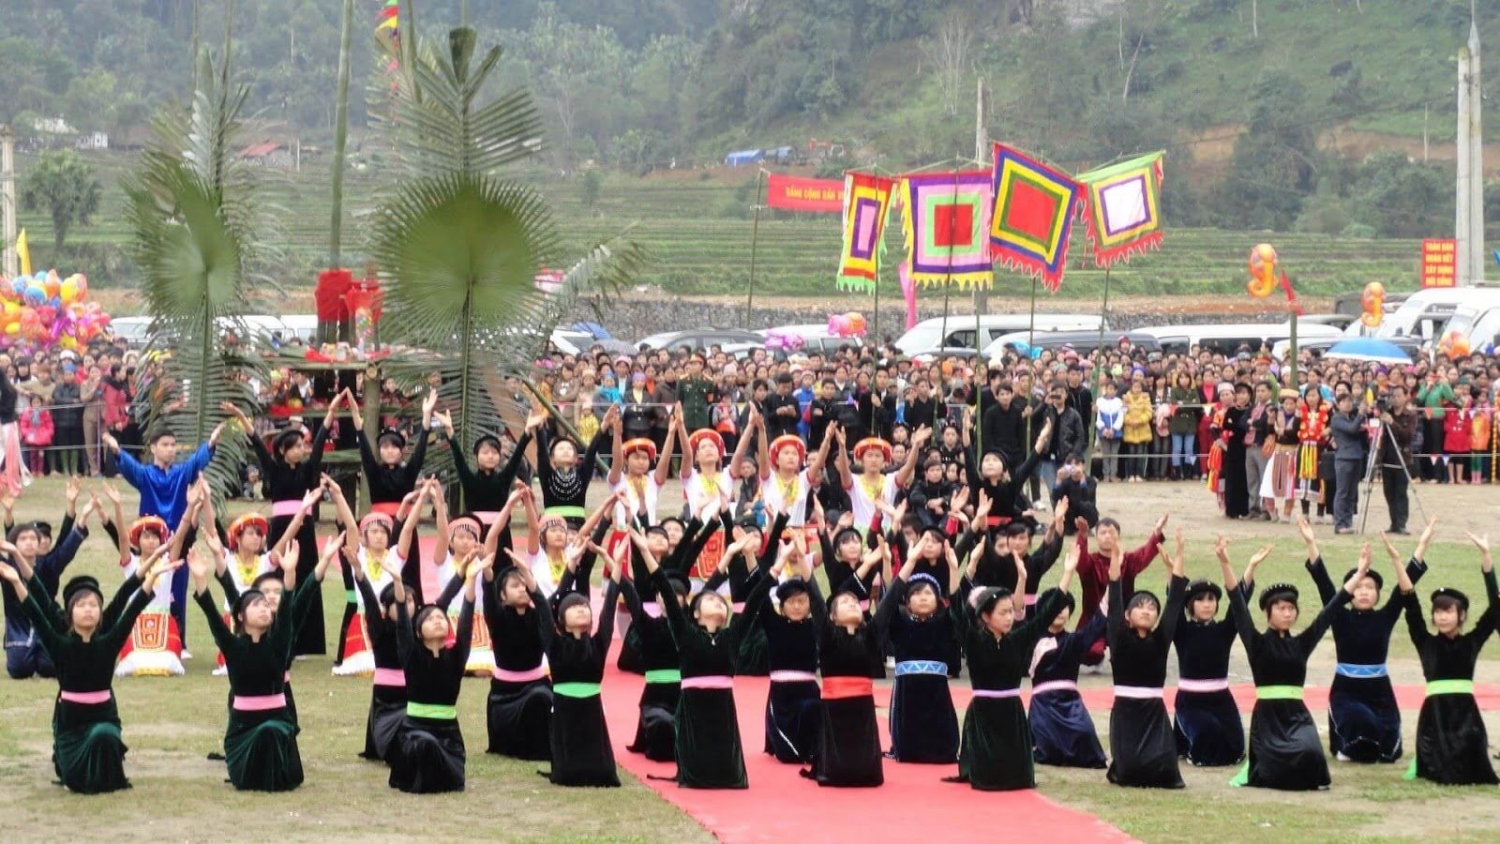 Đầu xuân đến với những lễ hội đặc sắc ở Hà Giang